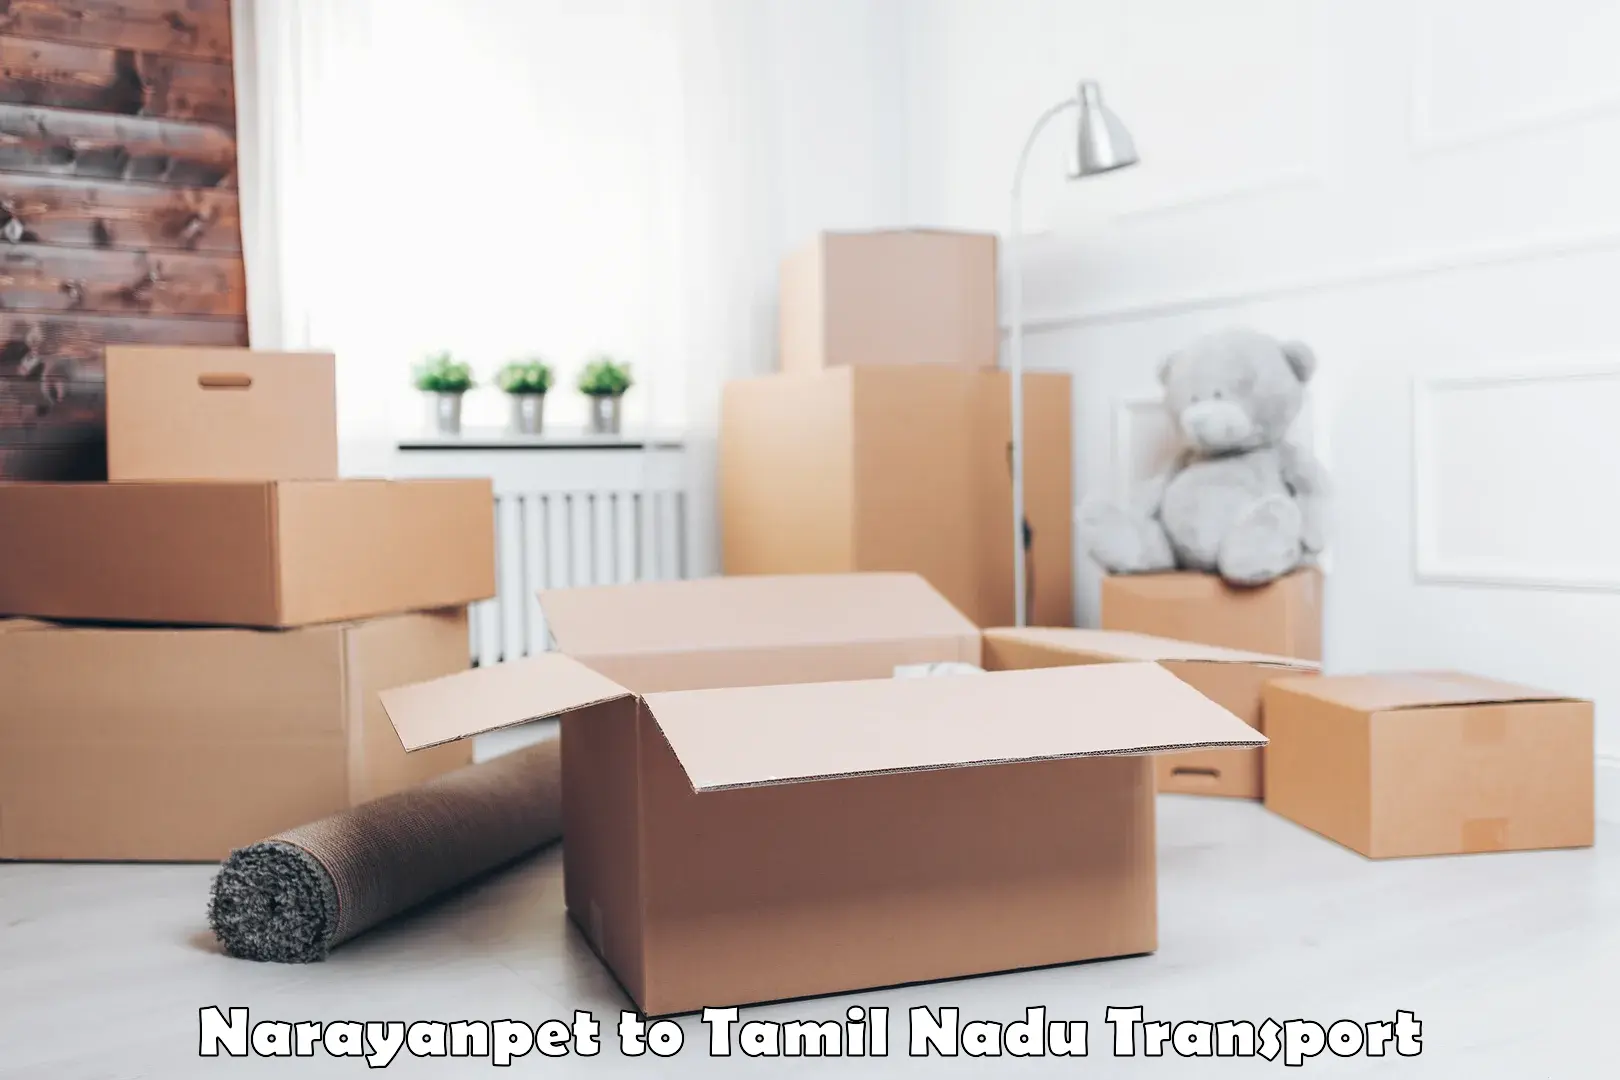 Furniture transport service Narayanpet to Perundurai